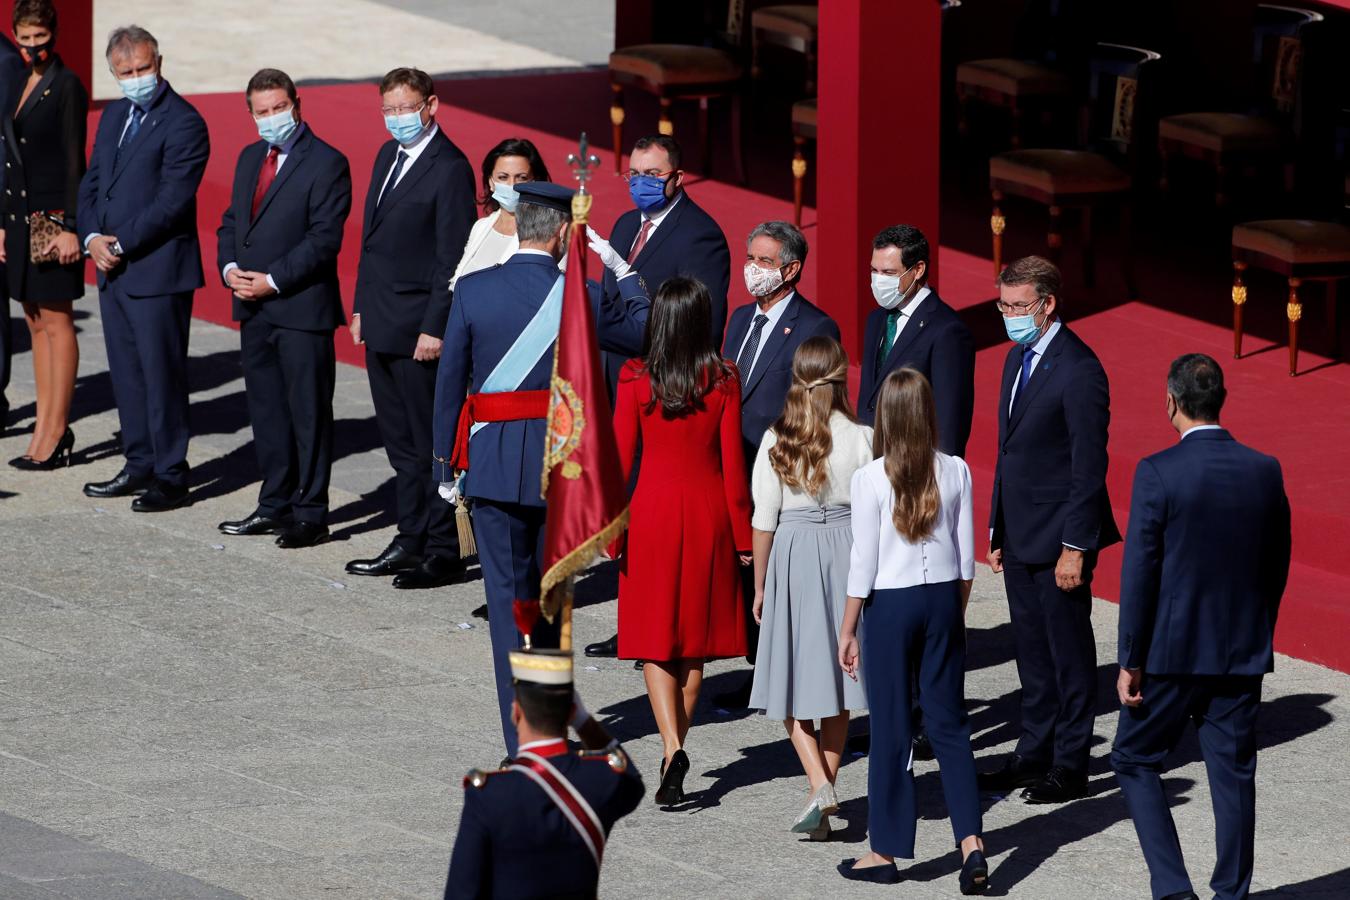 La Familia Real y Sánchez saludan a los presidentes autonómicos. A las ausencias citadas hay que añadir la del presidente de la región de Murcia, que está en cuarentena